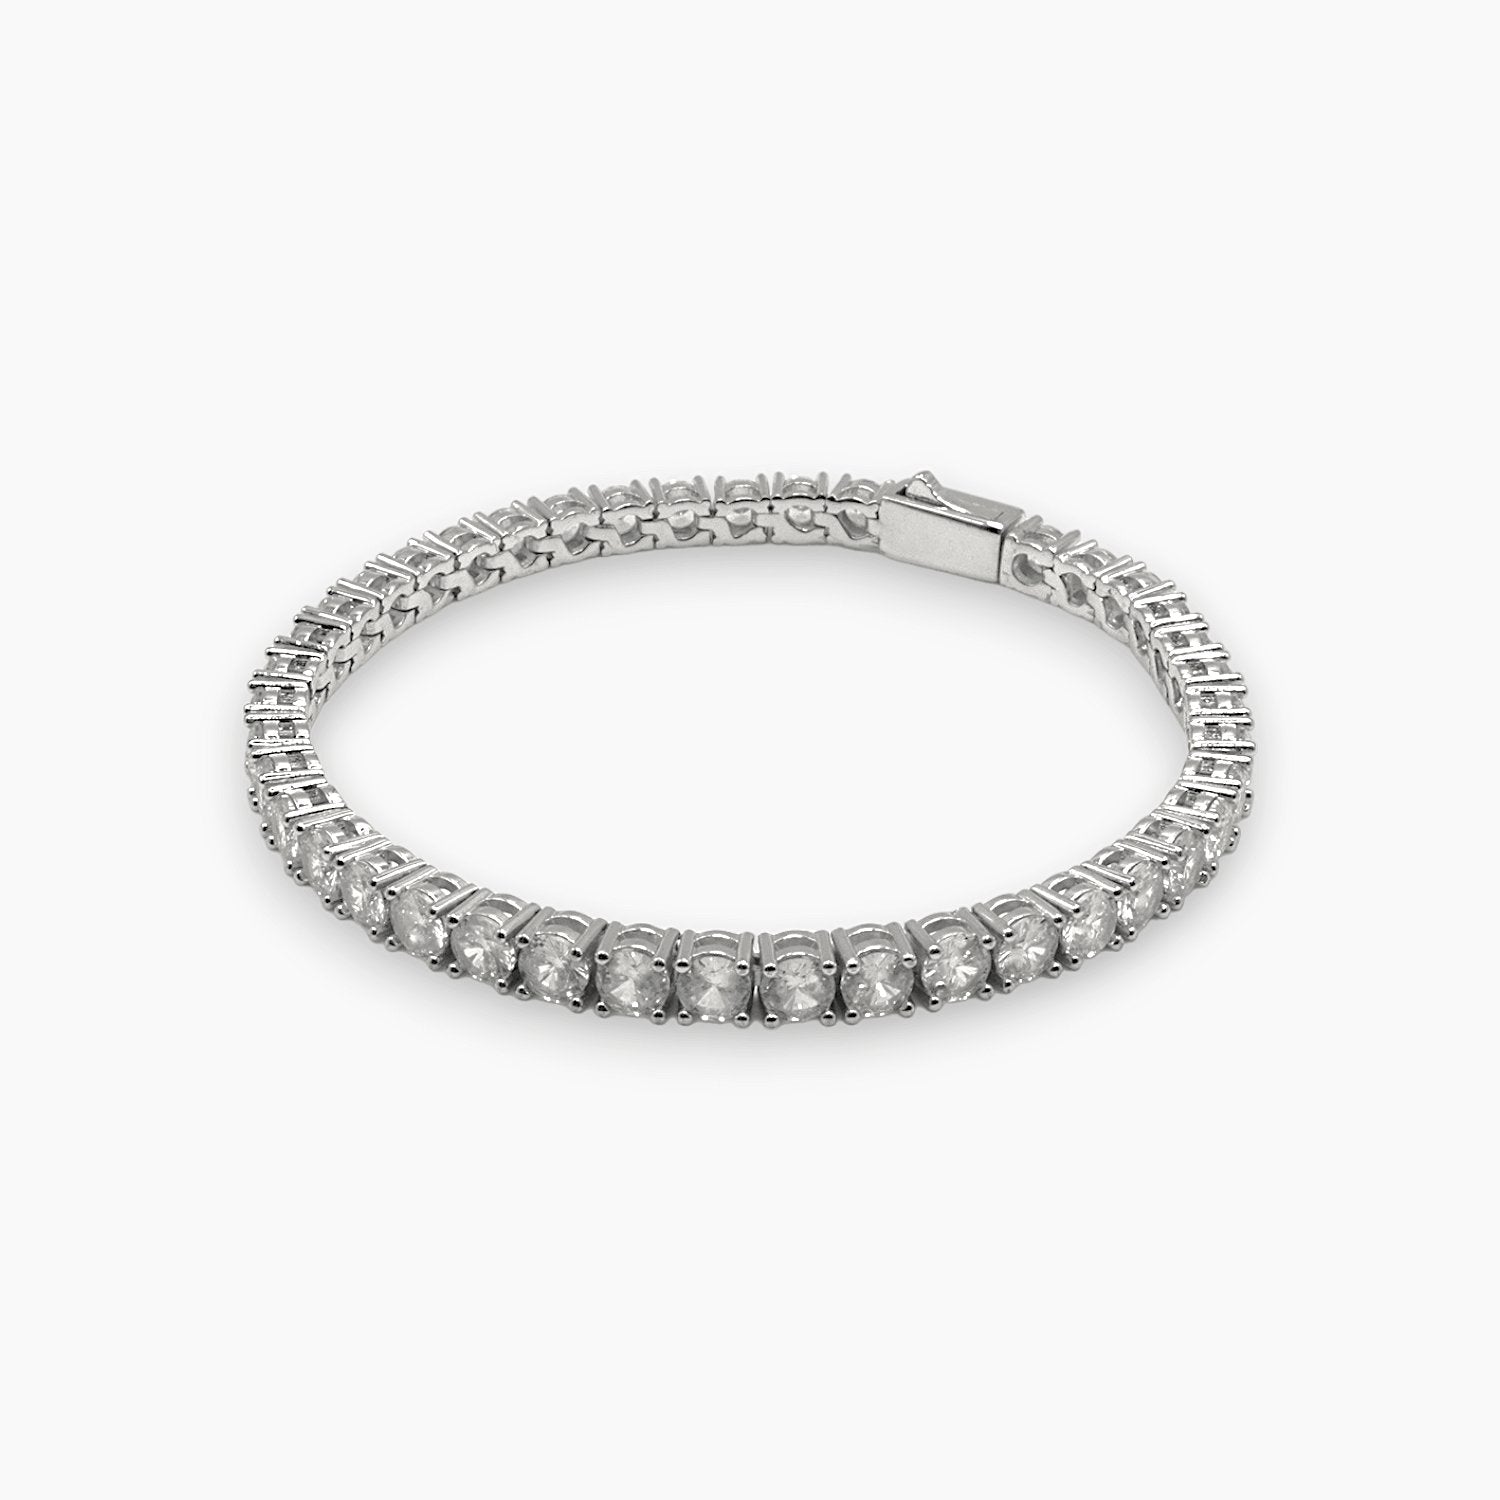 4mm silver tennis bracelet